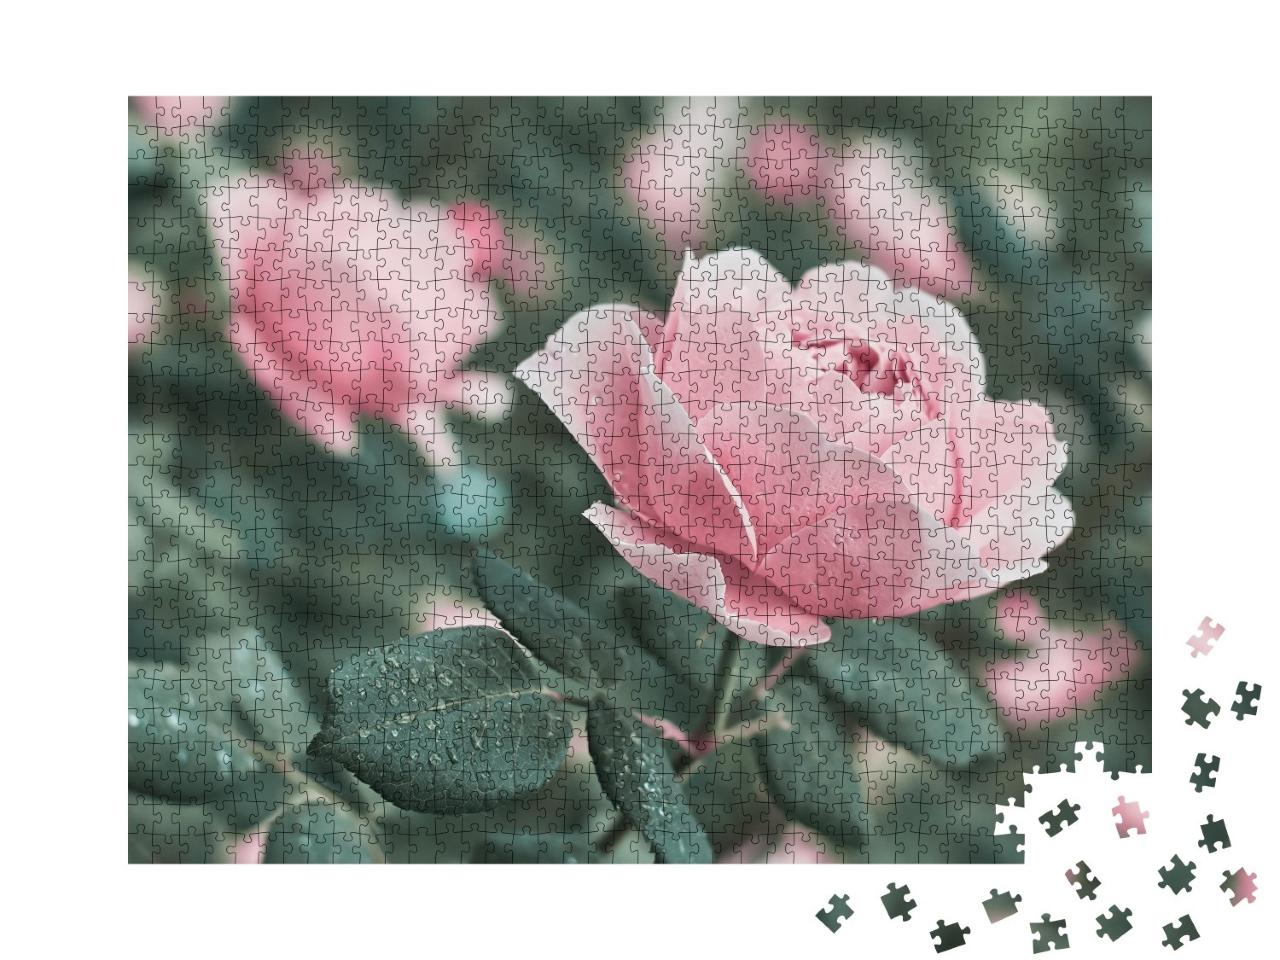 Puzzle de 1000 pièces « Roses roses dans la nature »